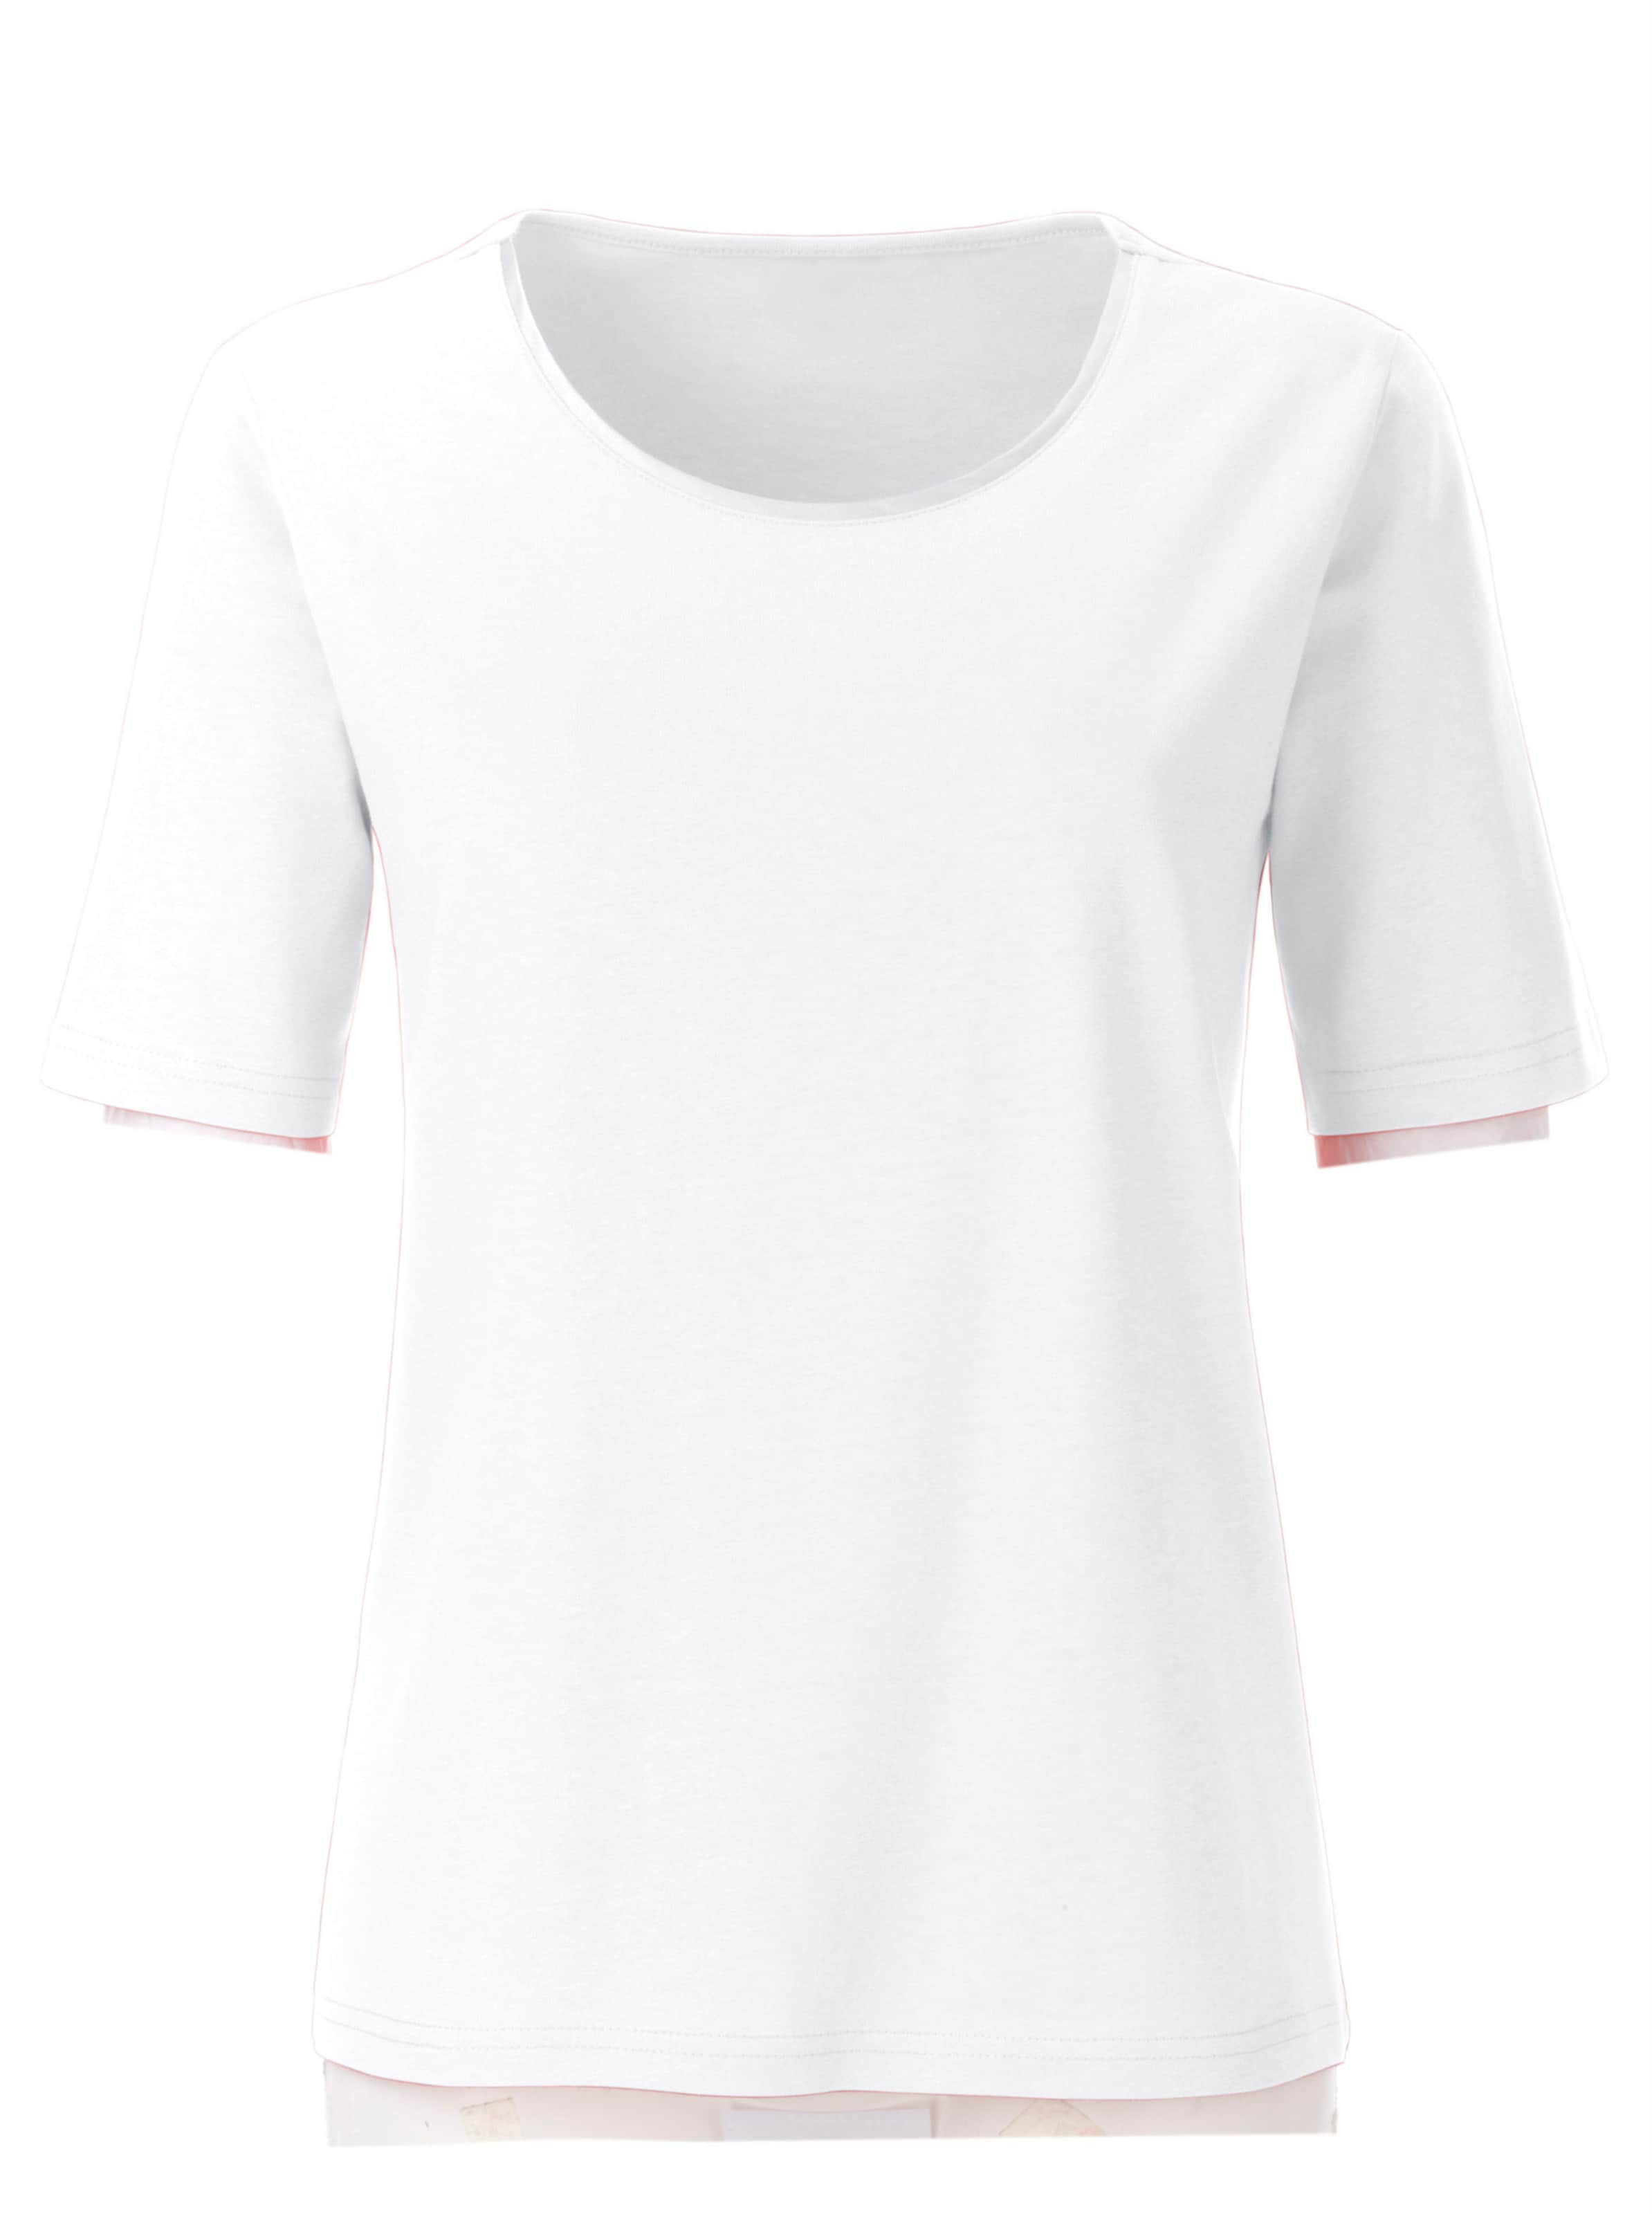 EIN LICHT günstig Kaufen-Rundhalsshirt in weiß von heine. Rundhalsshirt in weiß von heine <![CDATA[Anziehend schlicht, anziehend schön: Shirt mit schimmernder Satinpaspel am Ausschnitt. In wunderbar hautschmeichelnder Qualität.]]>. 